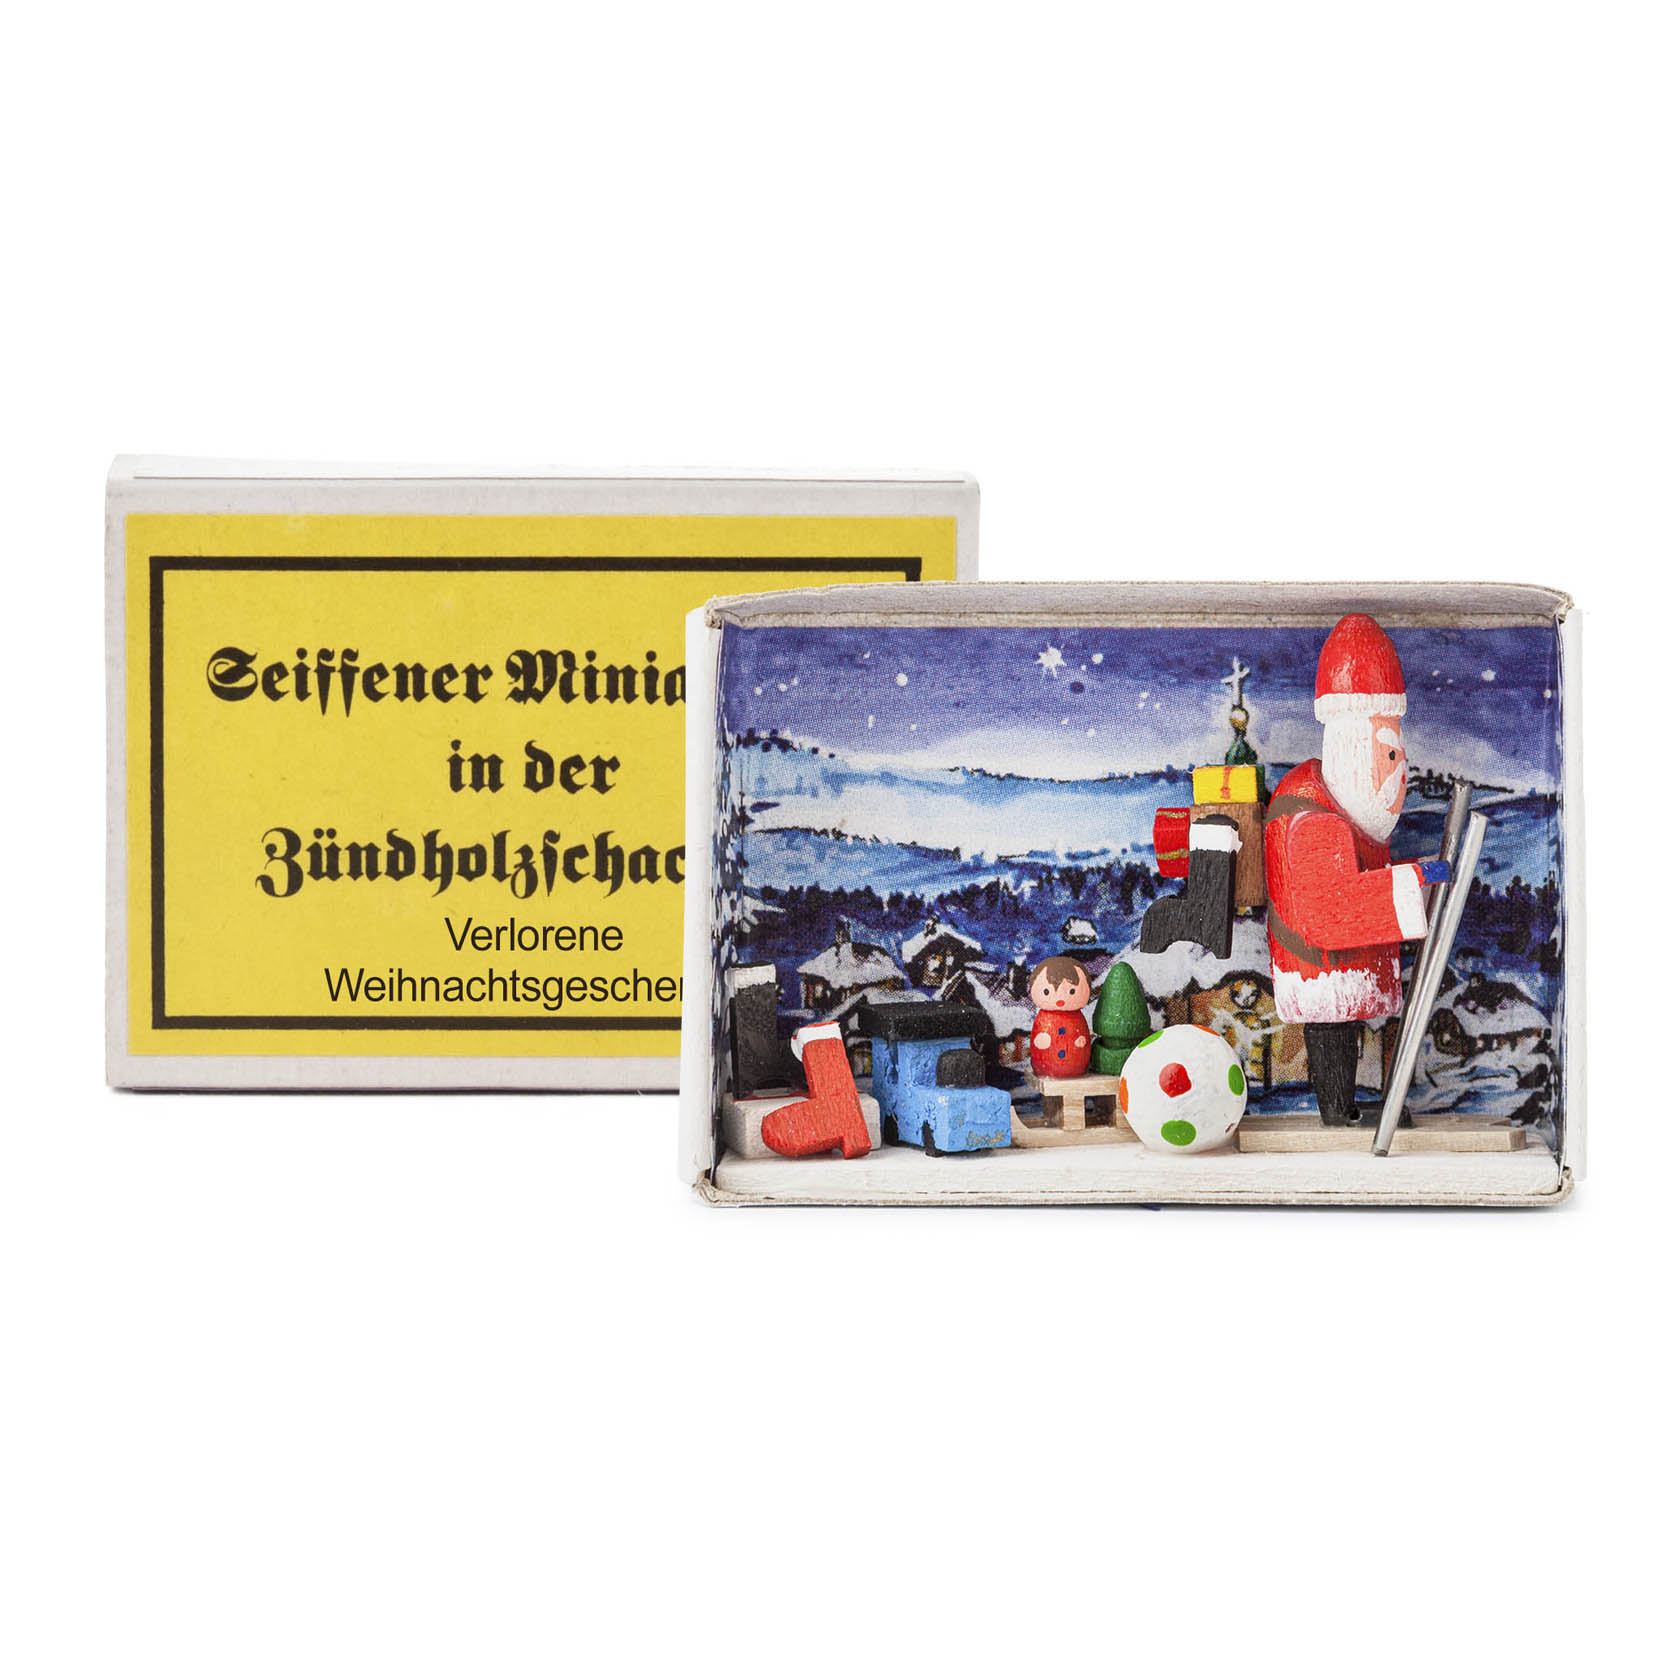 Zündholzschachtel Verlorene Weihnachtsgeschenke im Dregeno Online Shop günstig kaufen